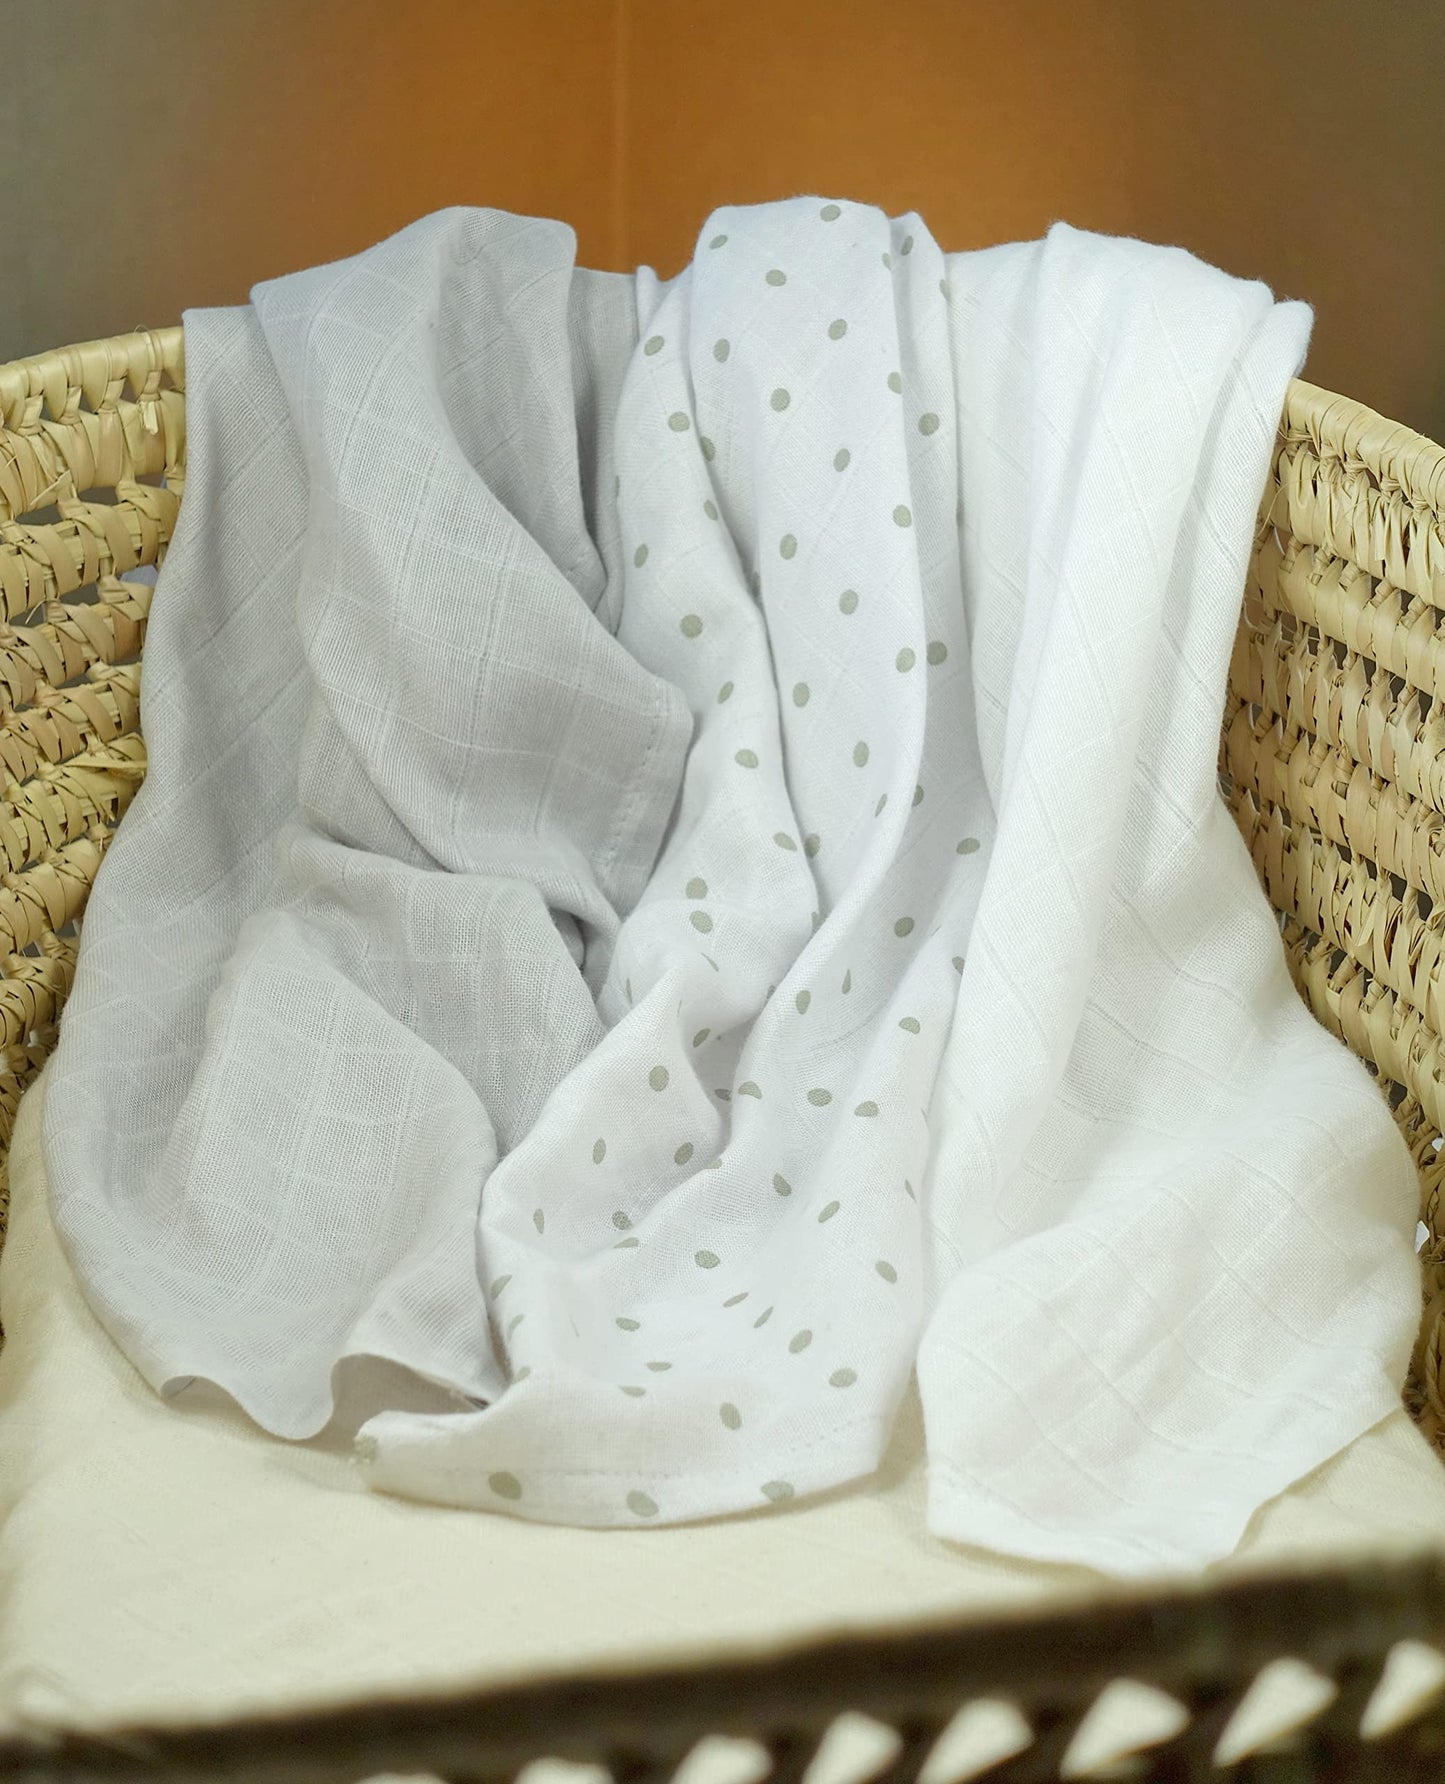 MuslinZ muslin cloths 6 pack 70x70cms 100% pure cotton burp cloths, soft and absorbent for newborns (White/Grey Spot)